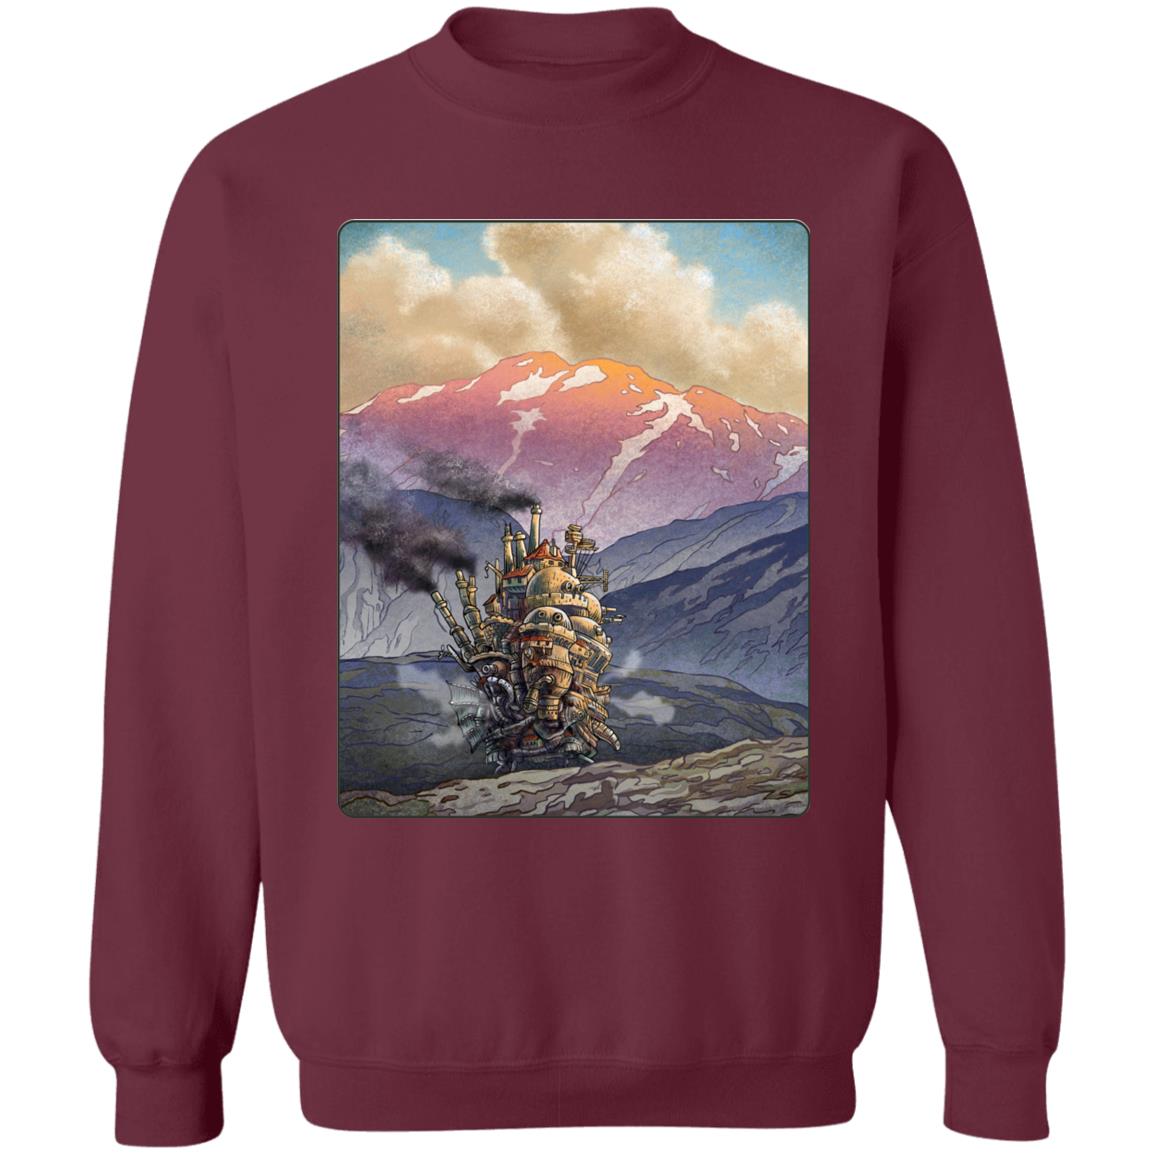 Howl’s Moving Castle Landscape Sweatshirt